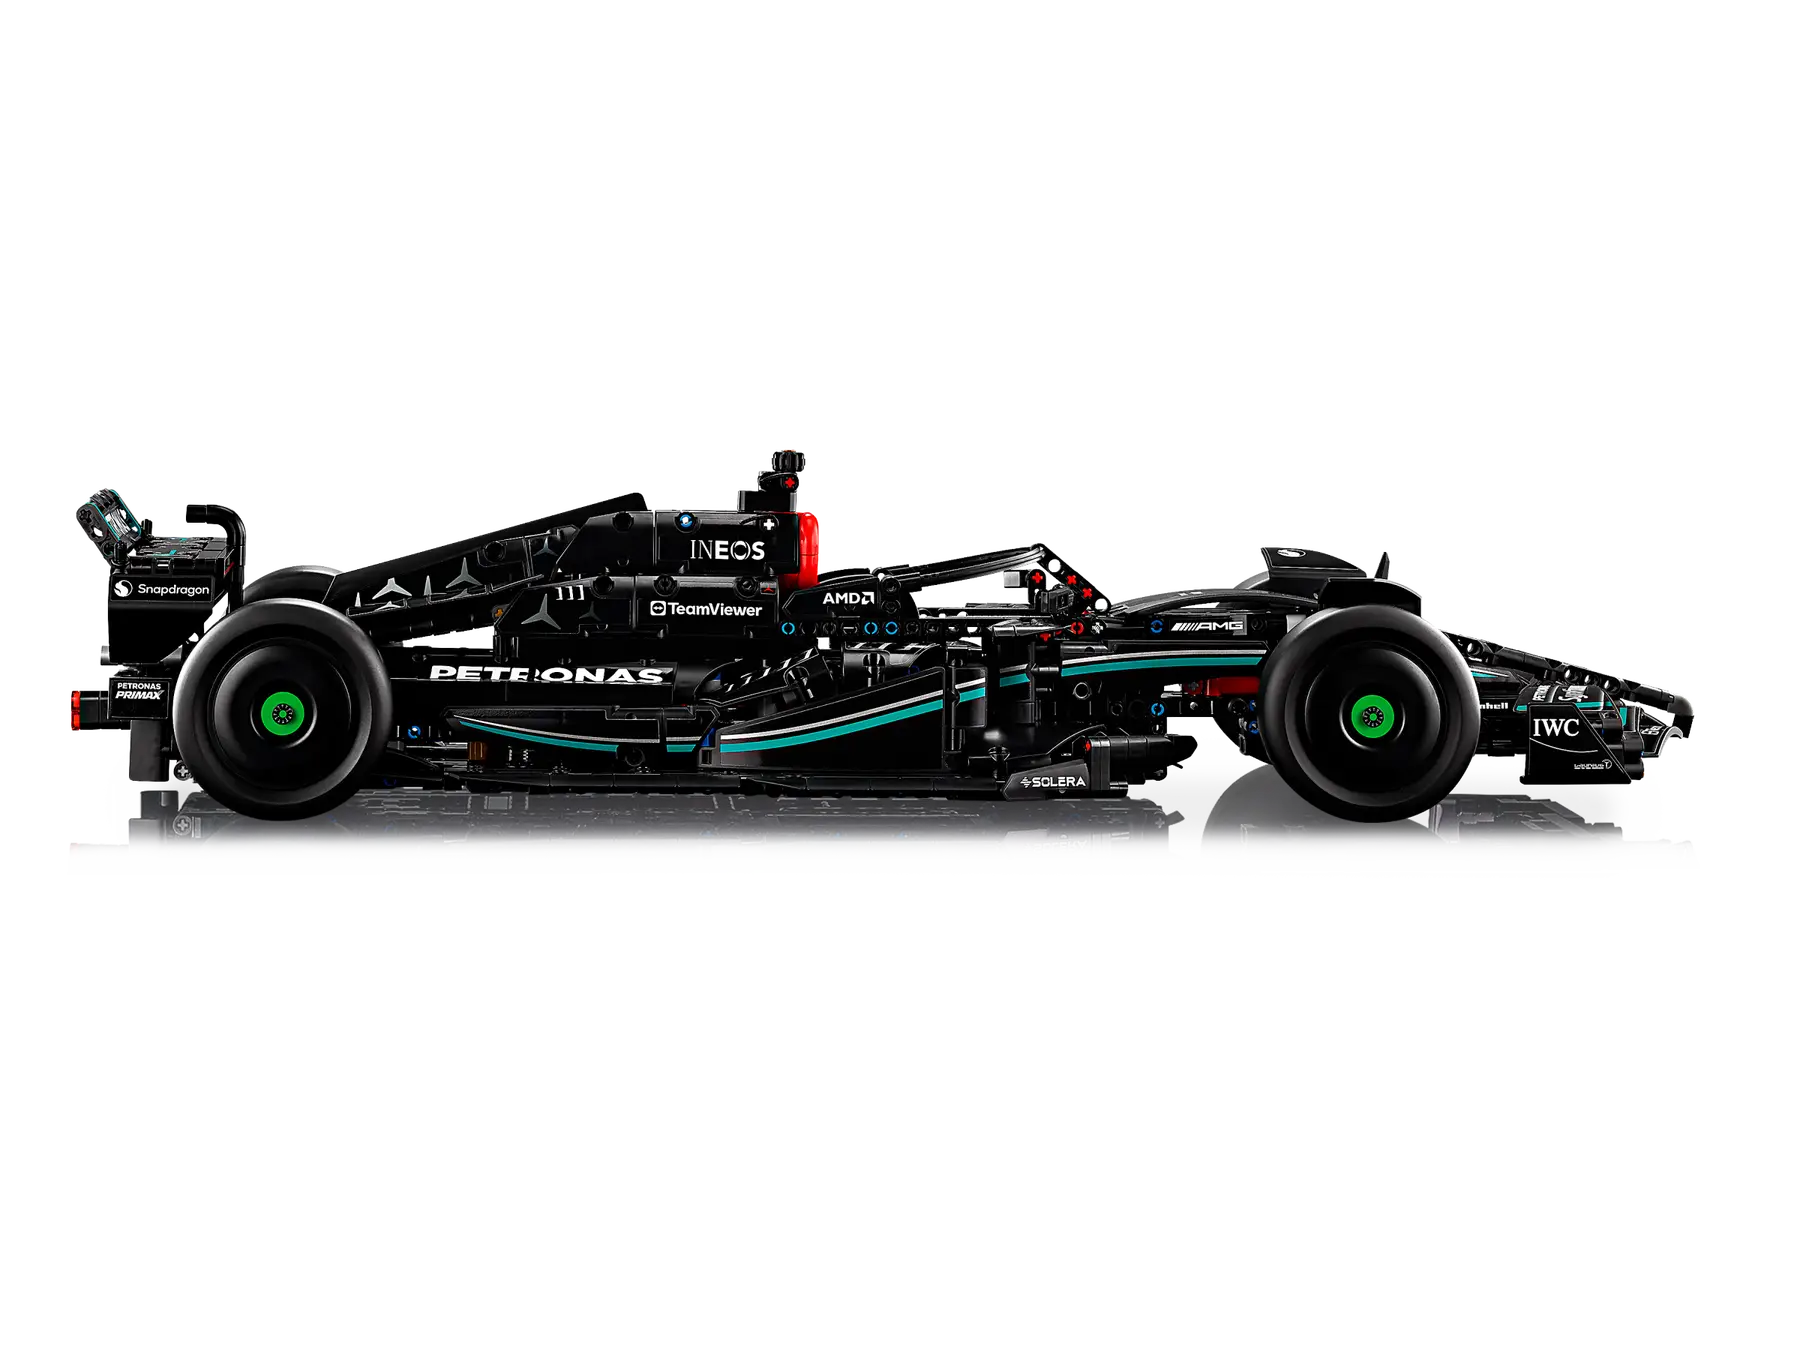 LEGO Mercedes-AMG F1 W14 E Performance 42171